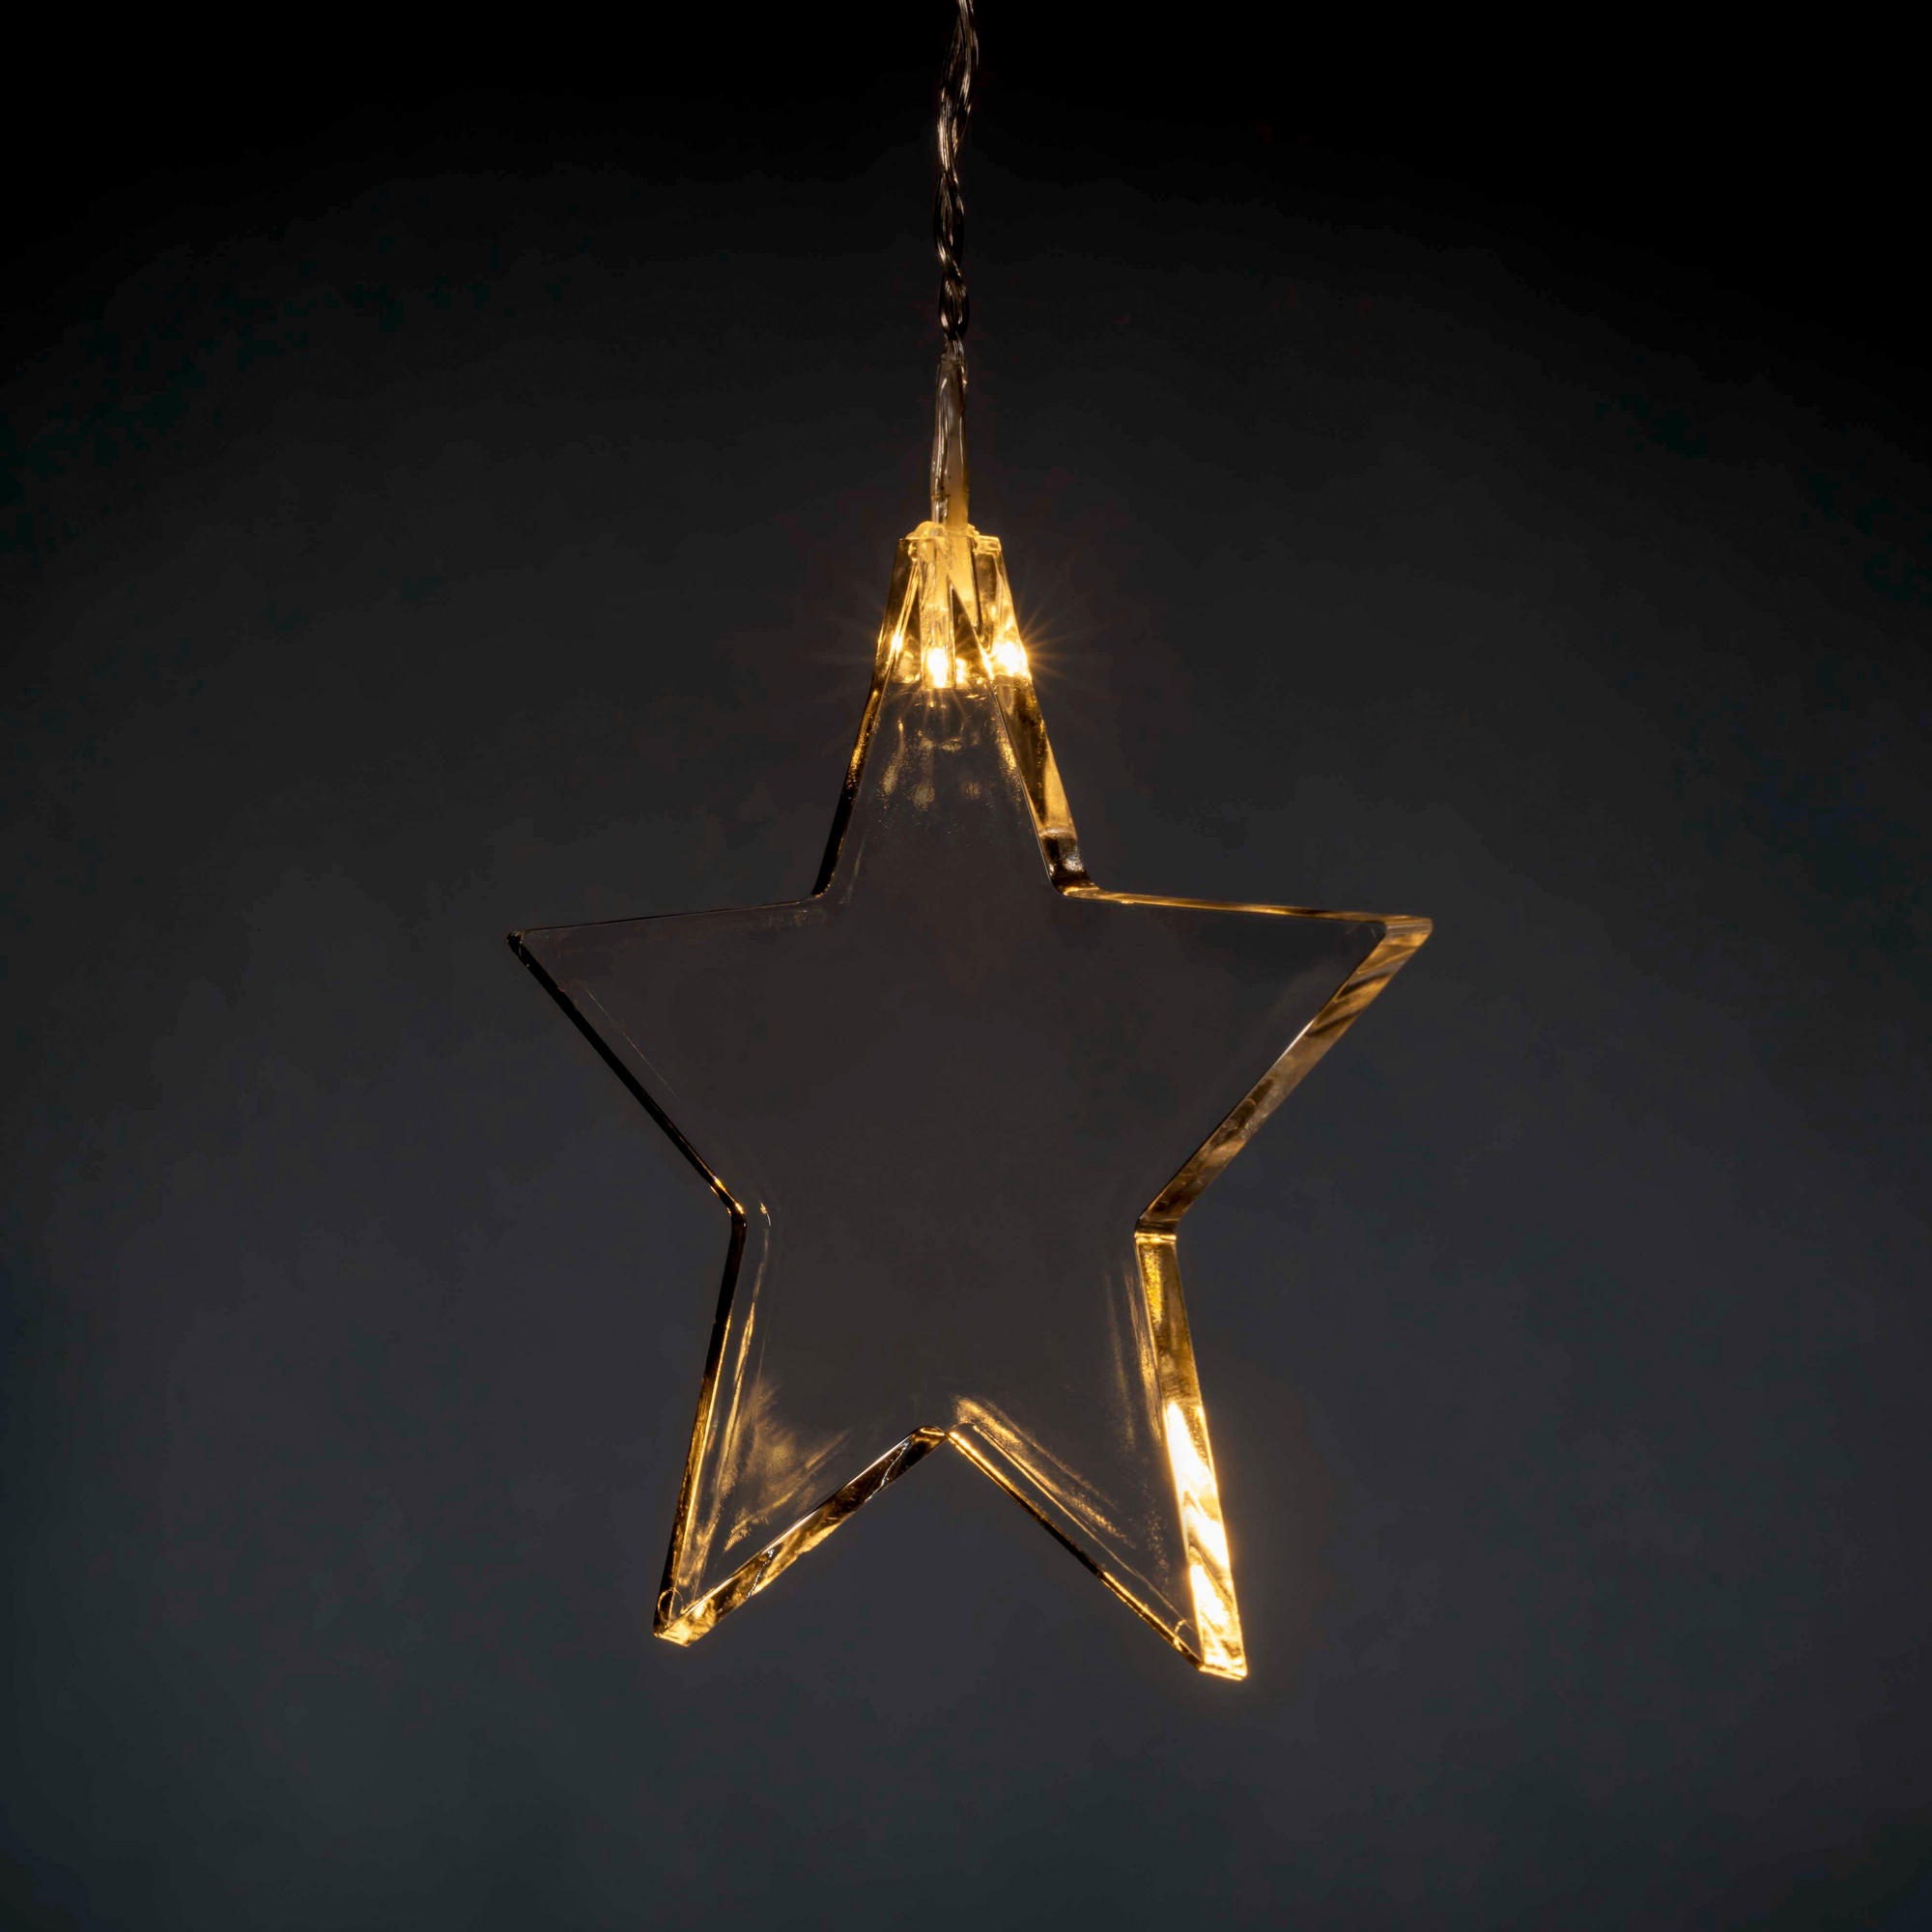 LED-Lichtervorhang 'Sterne' 8 LEDs warmweiß 105 cm + product picture